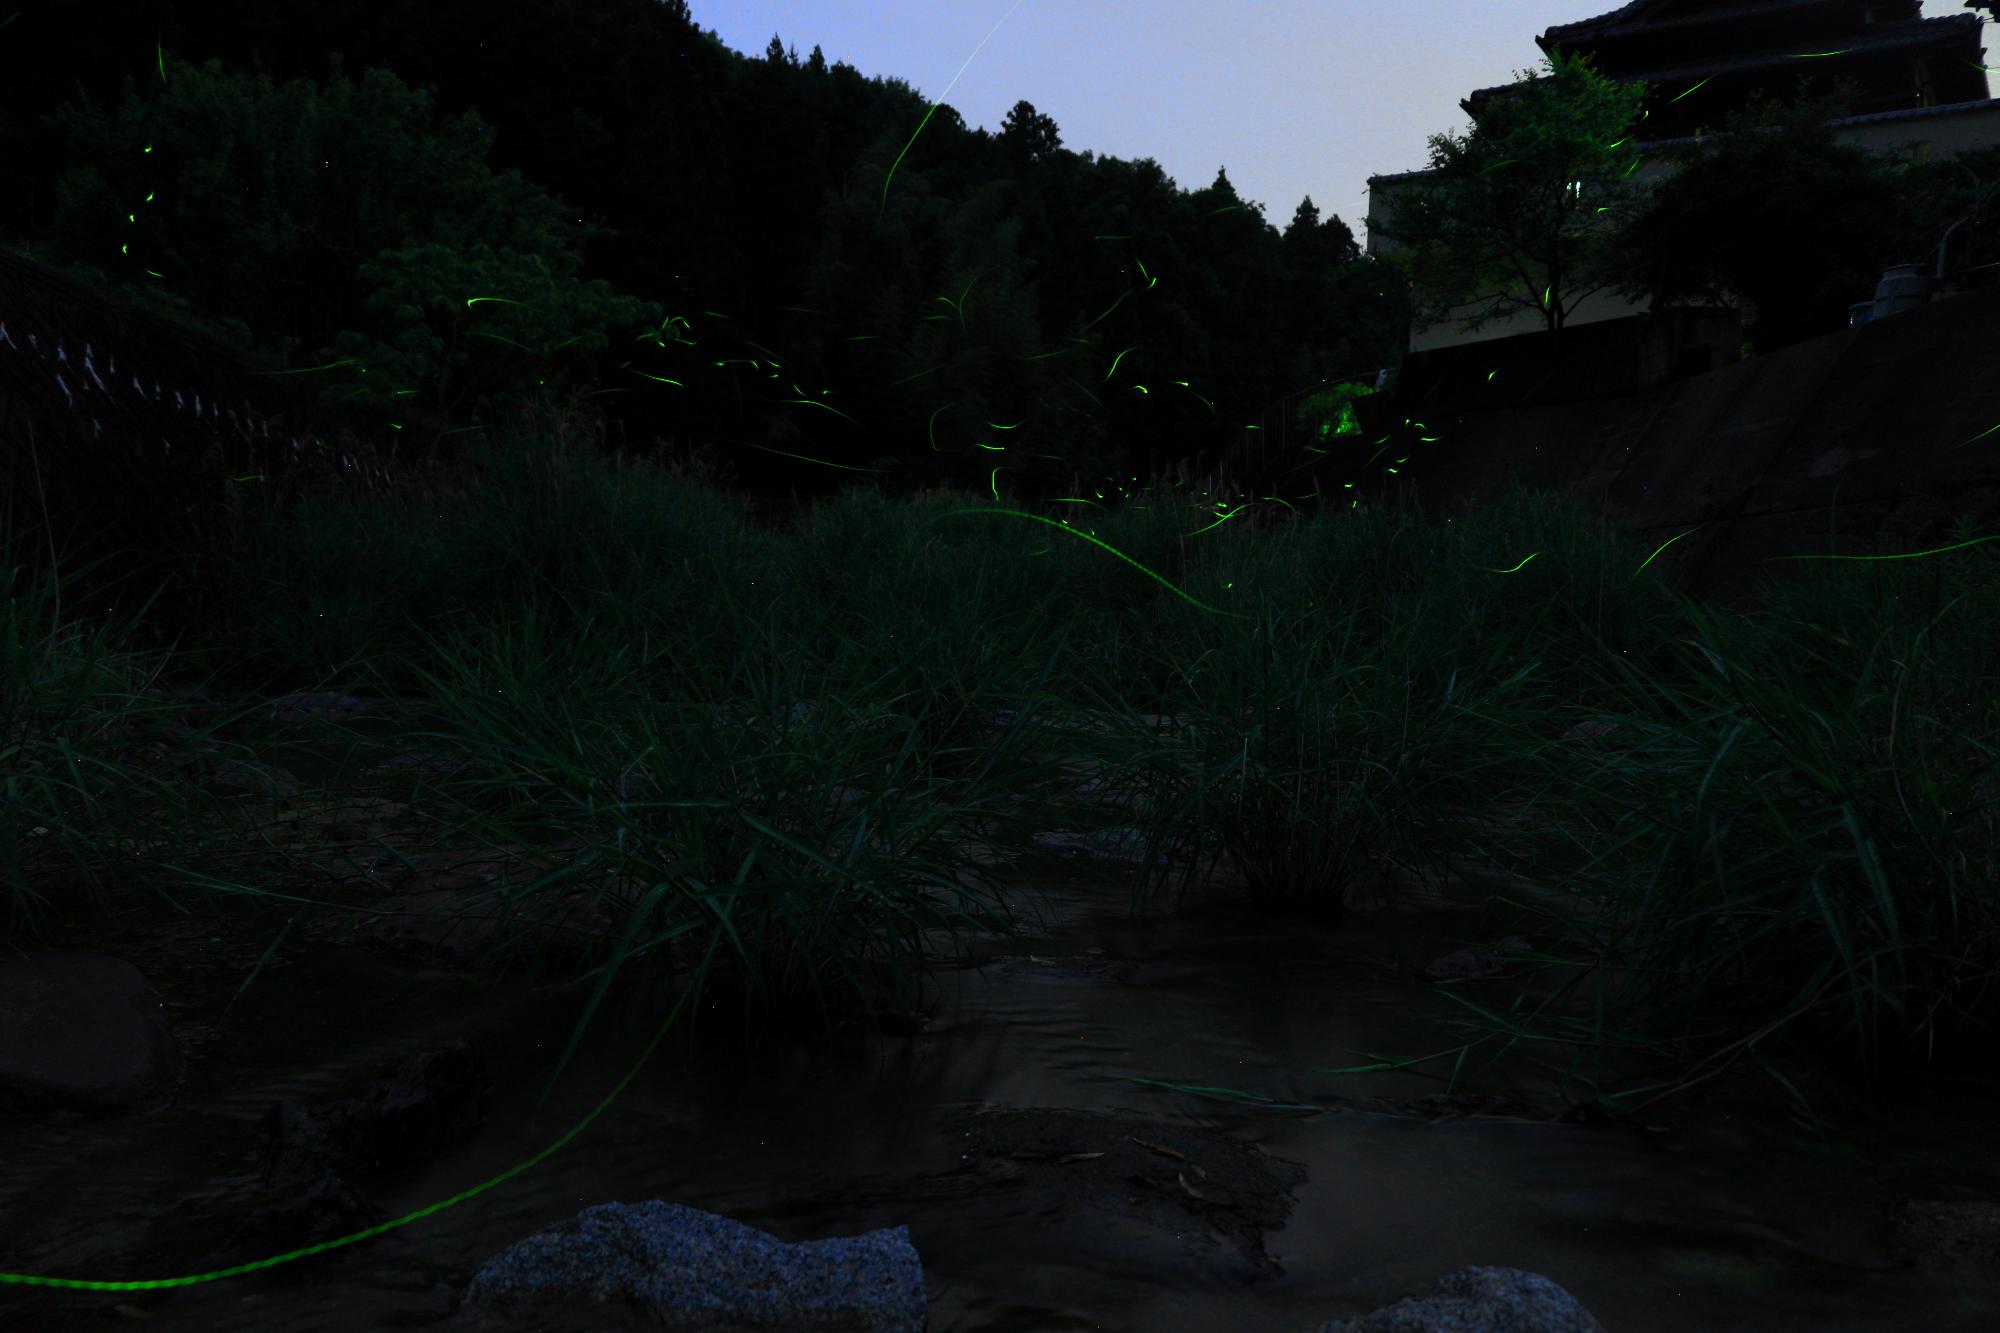 中山地区殿川ダム上流にて、夜にホタルが光を放ちながら飛んでいる様子